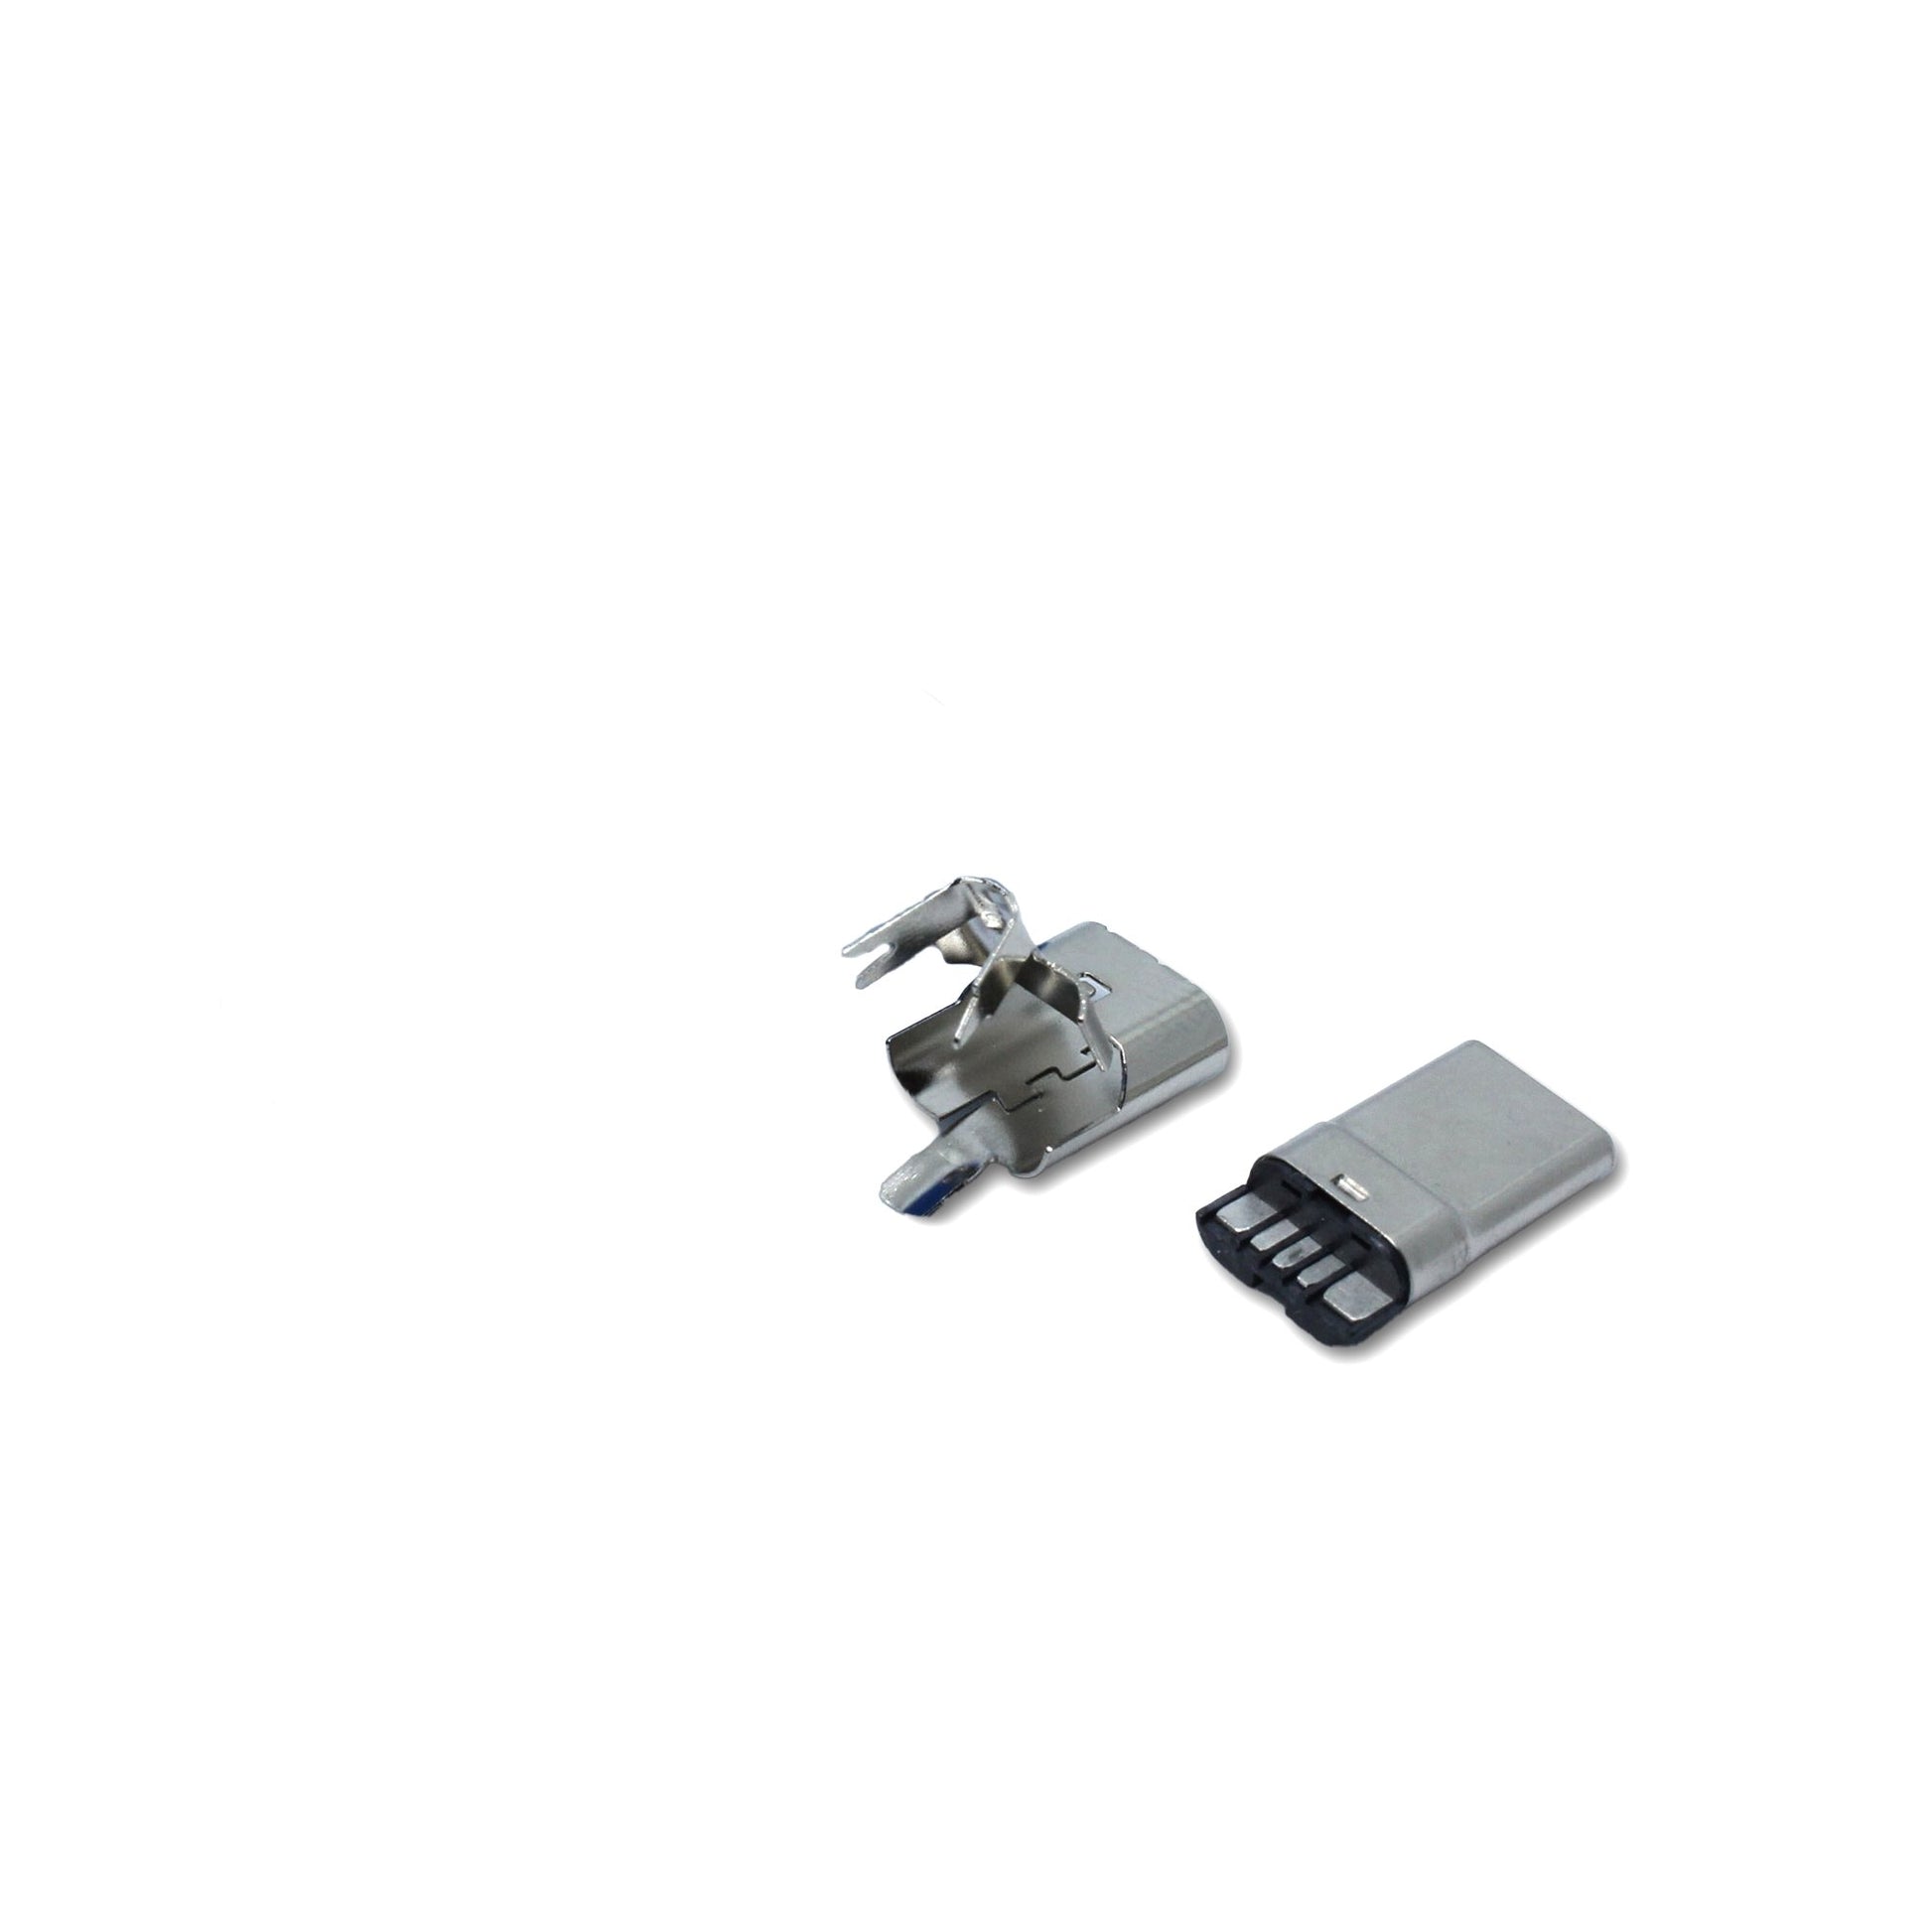 Einzelteile USB C Stecker ohne Gehäuse, Ersatzteil für ein USB 2.0 Kabel